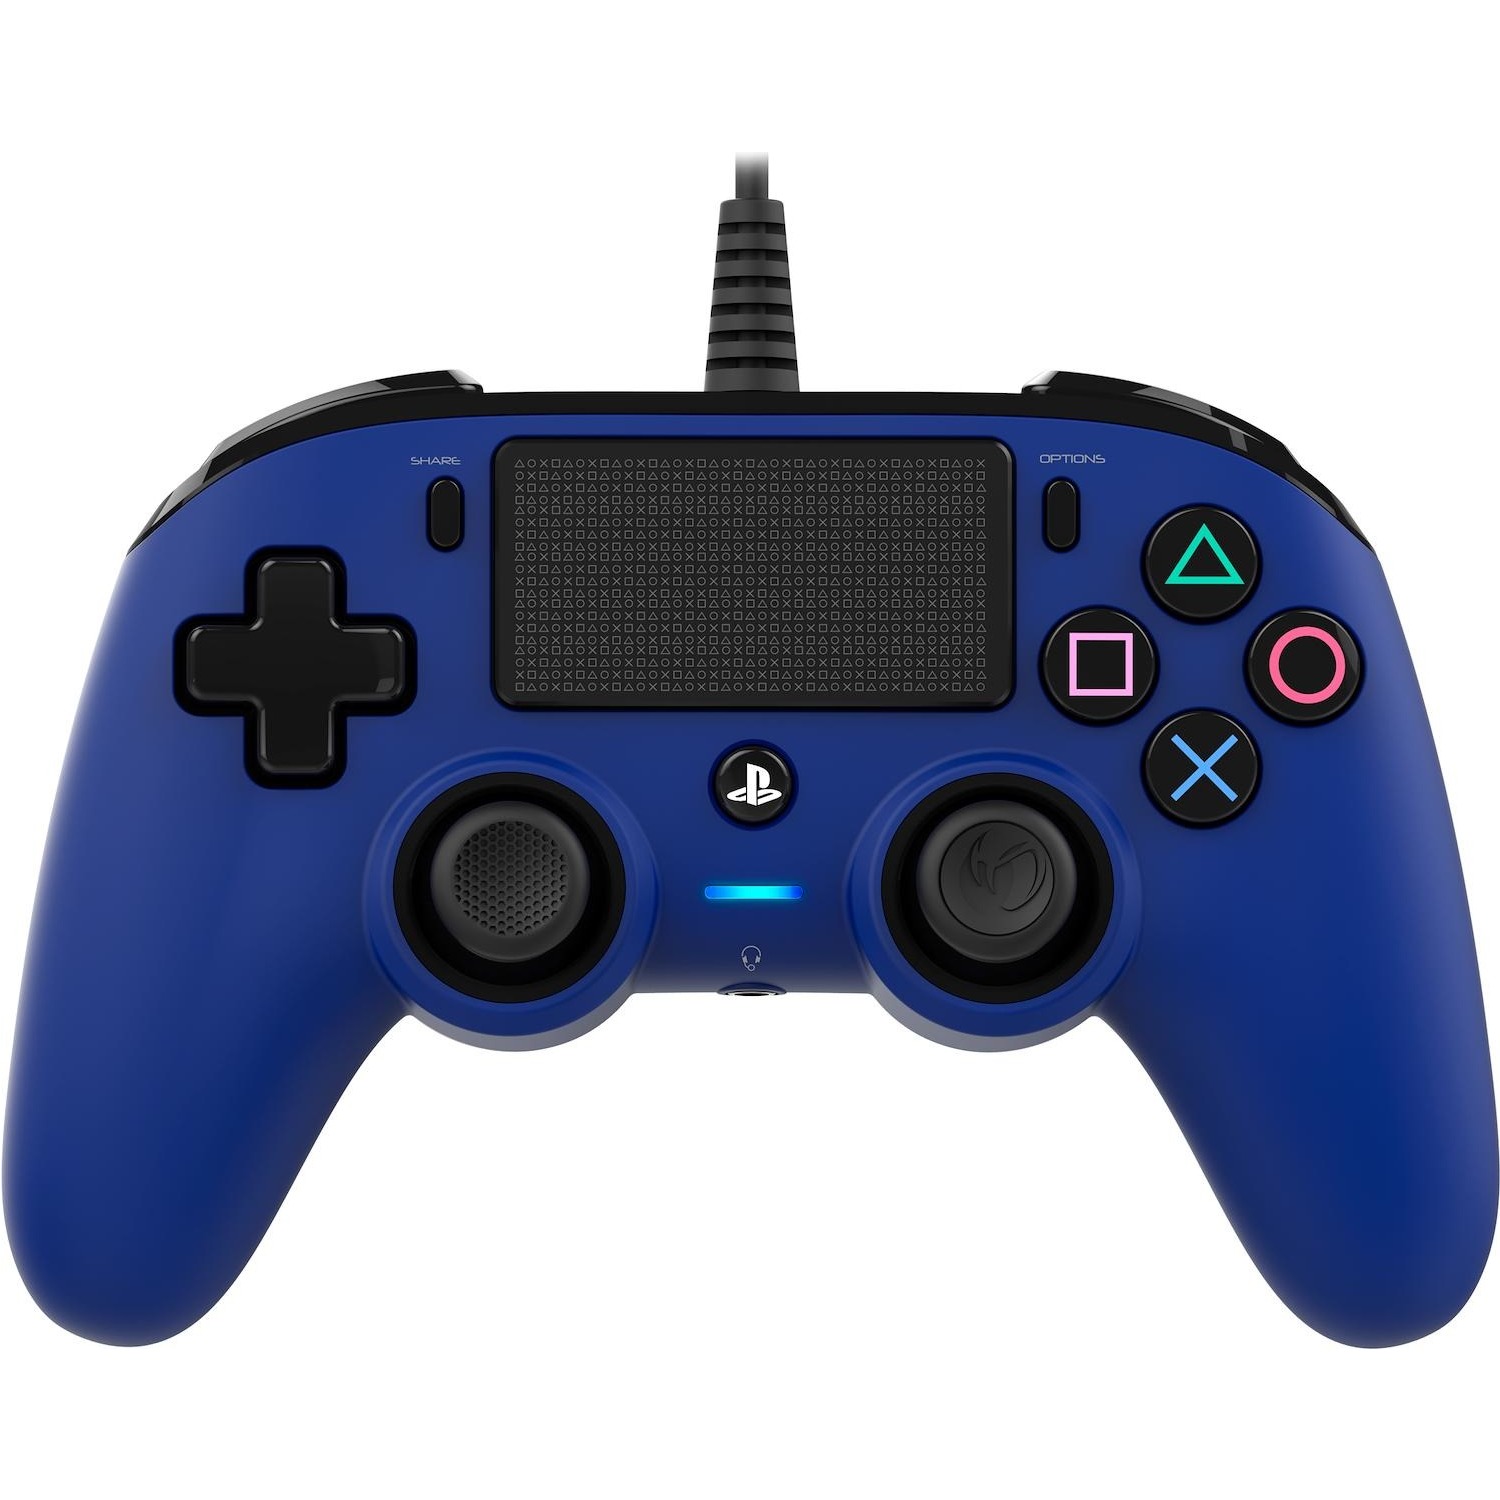 Immagine per Nacon PS4 Pad compact blu wired da DIMOStore